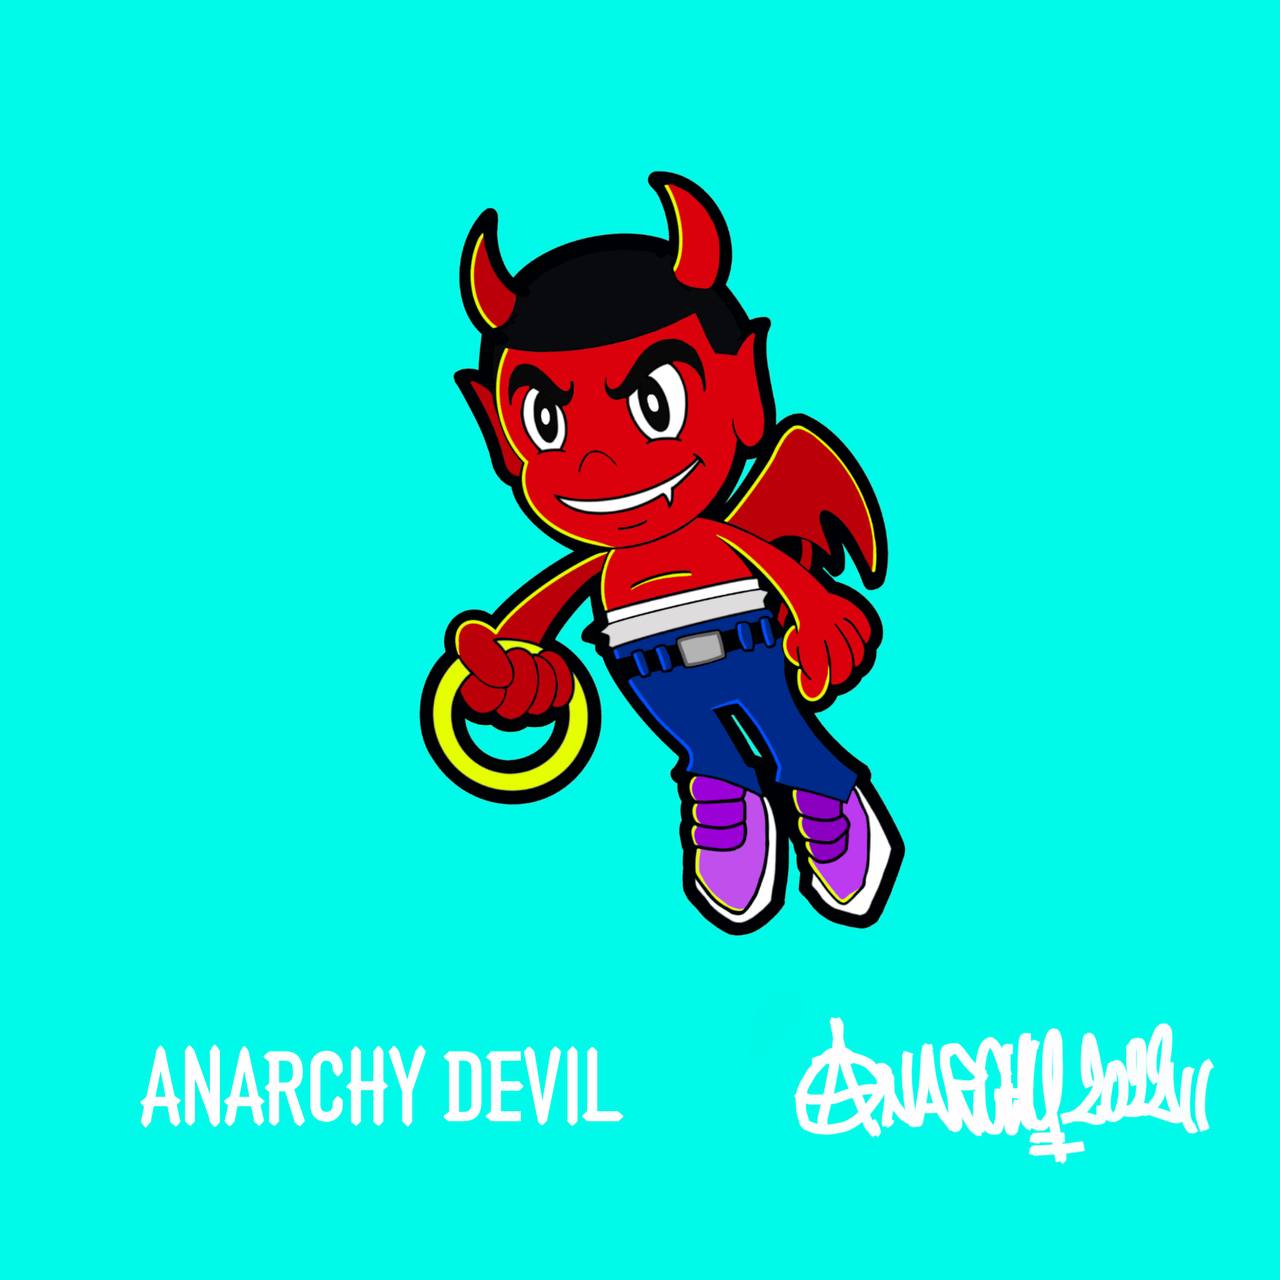 ANARCHY DEVIL (VALUE 3000NXD)